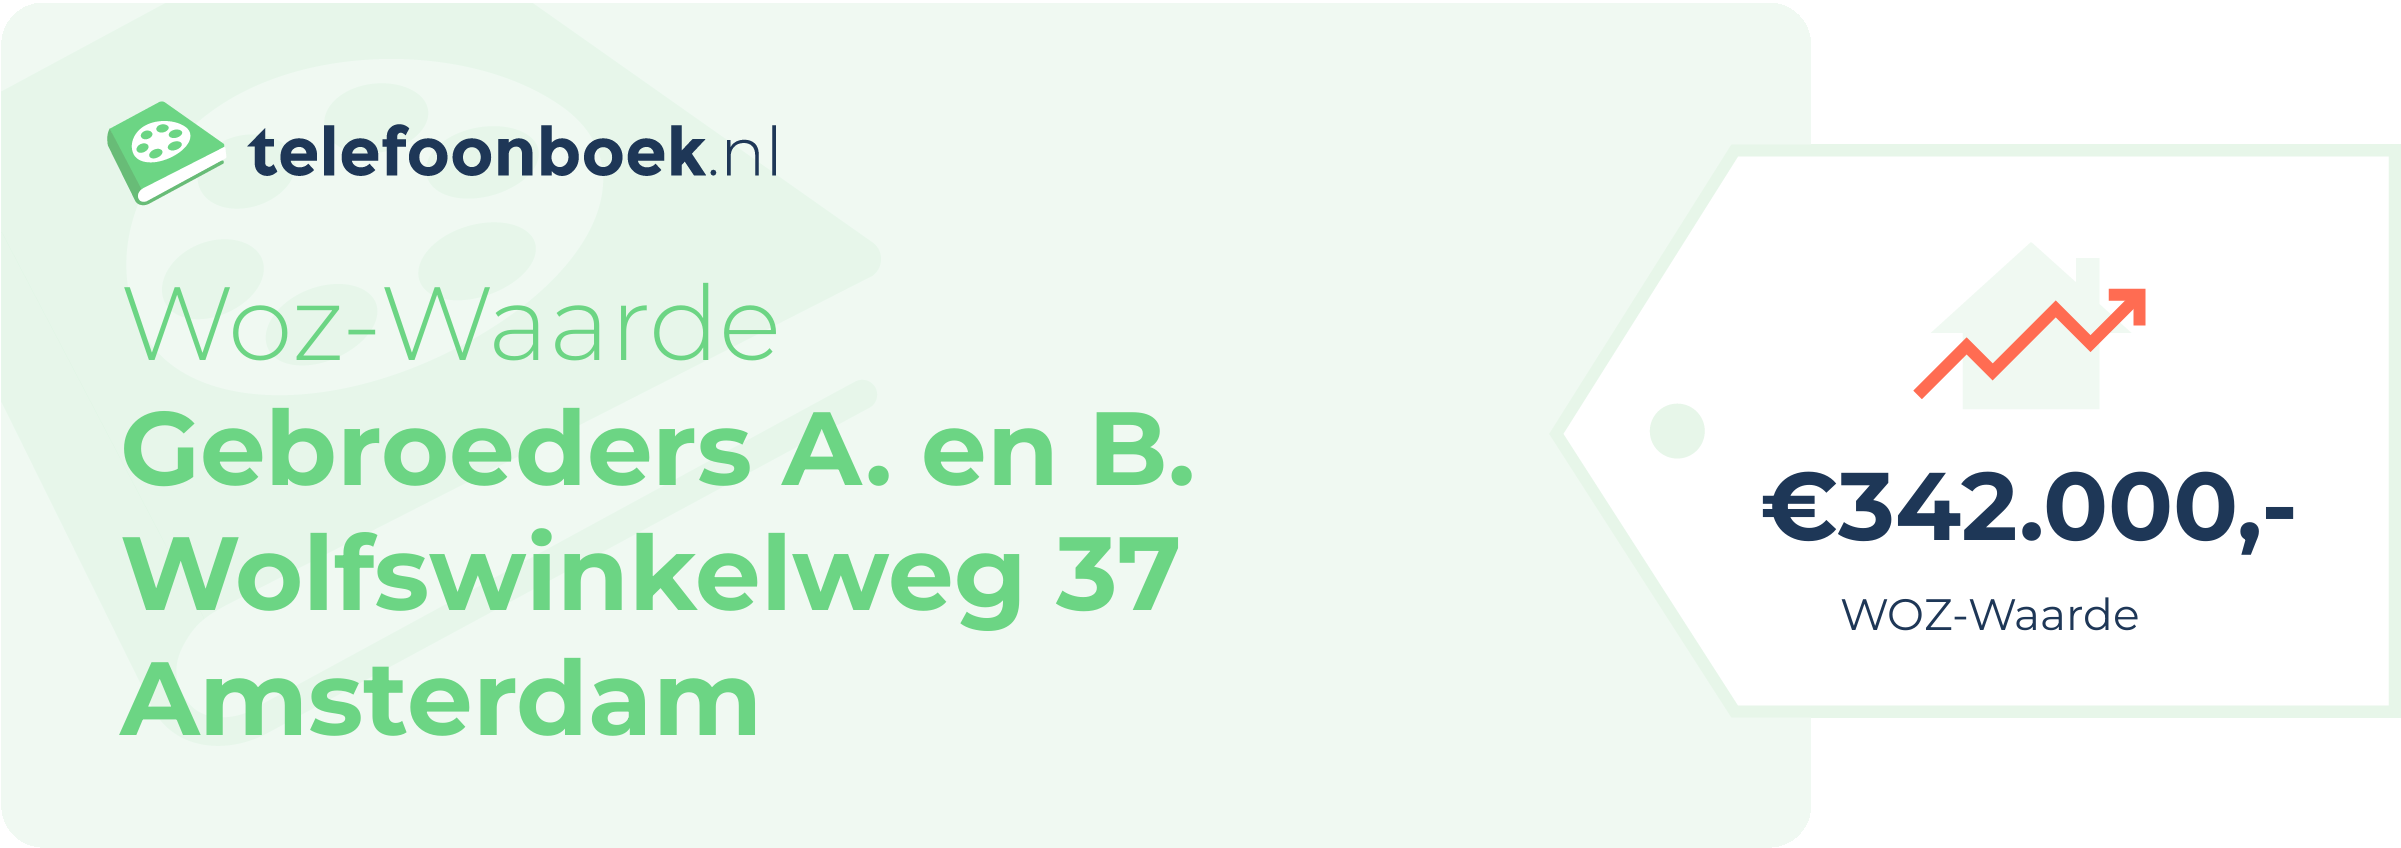 WOZ-waarde Gebroeders A. En B. Wolfswinkelweg 37 Amsterdam